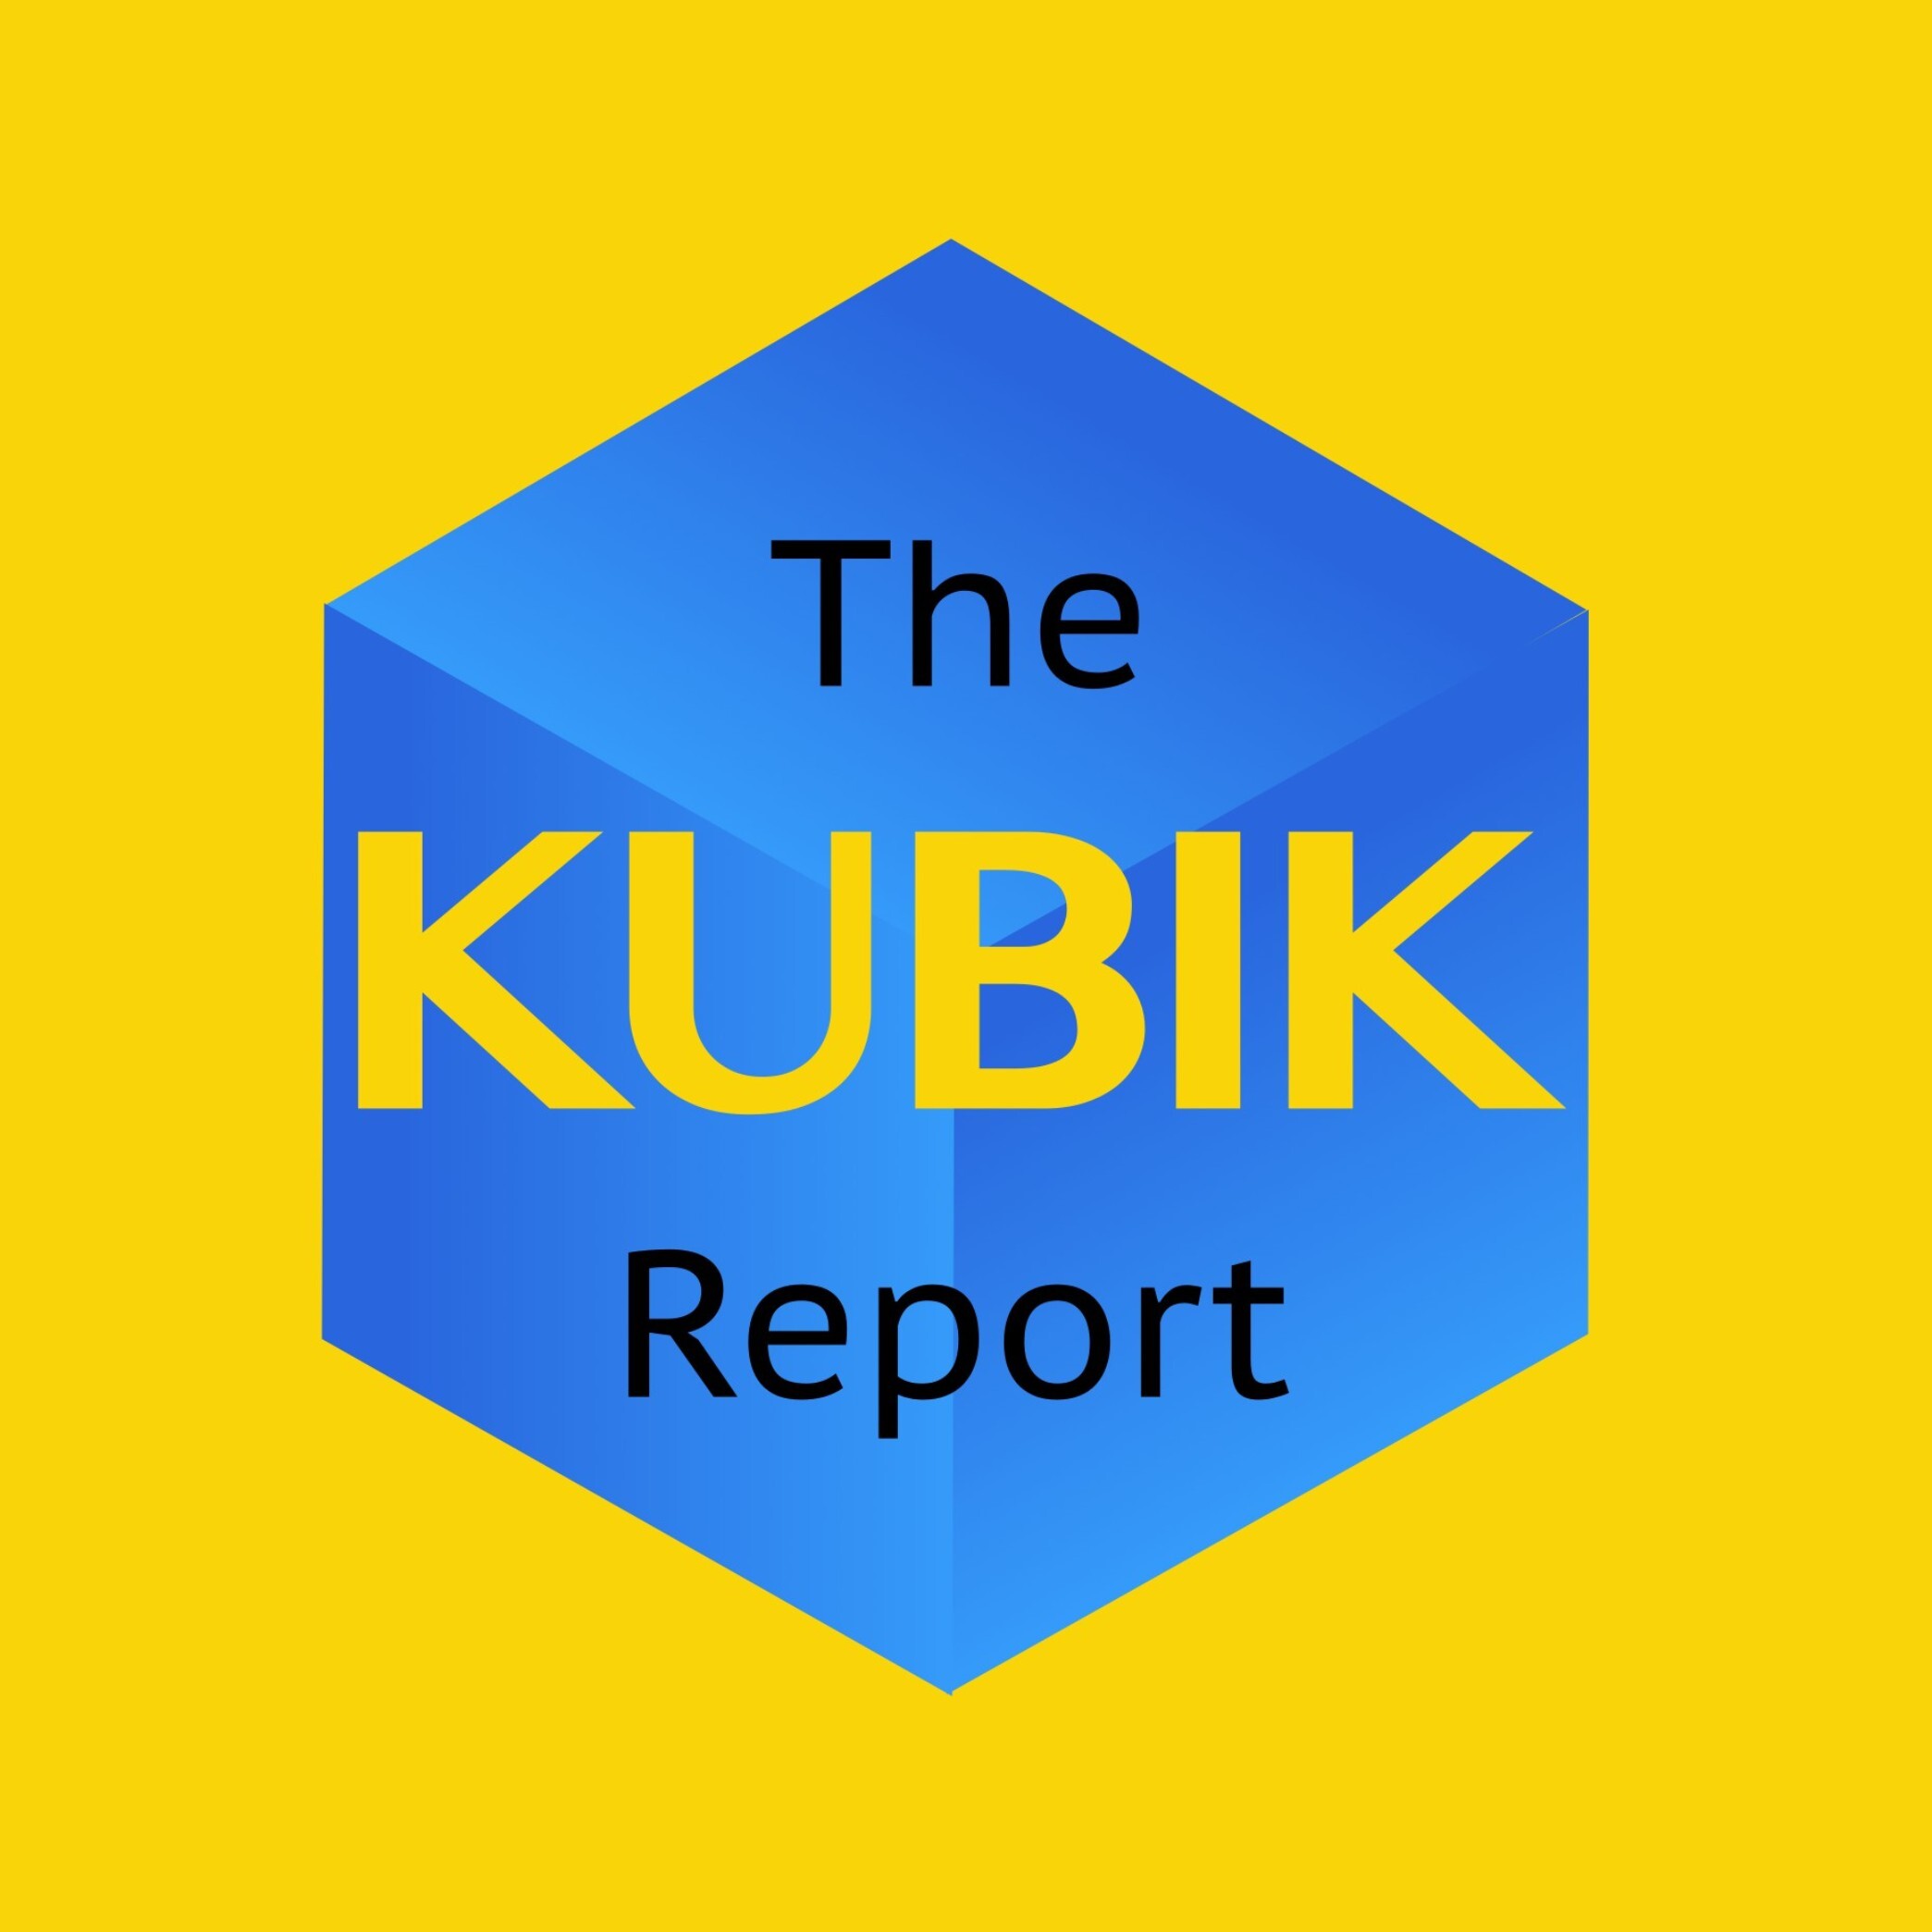 kubik_report_mzn2ky.jpg